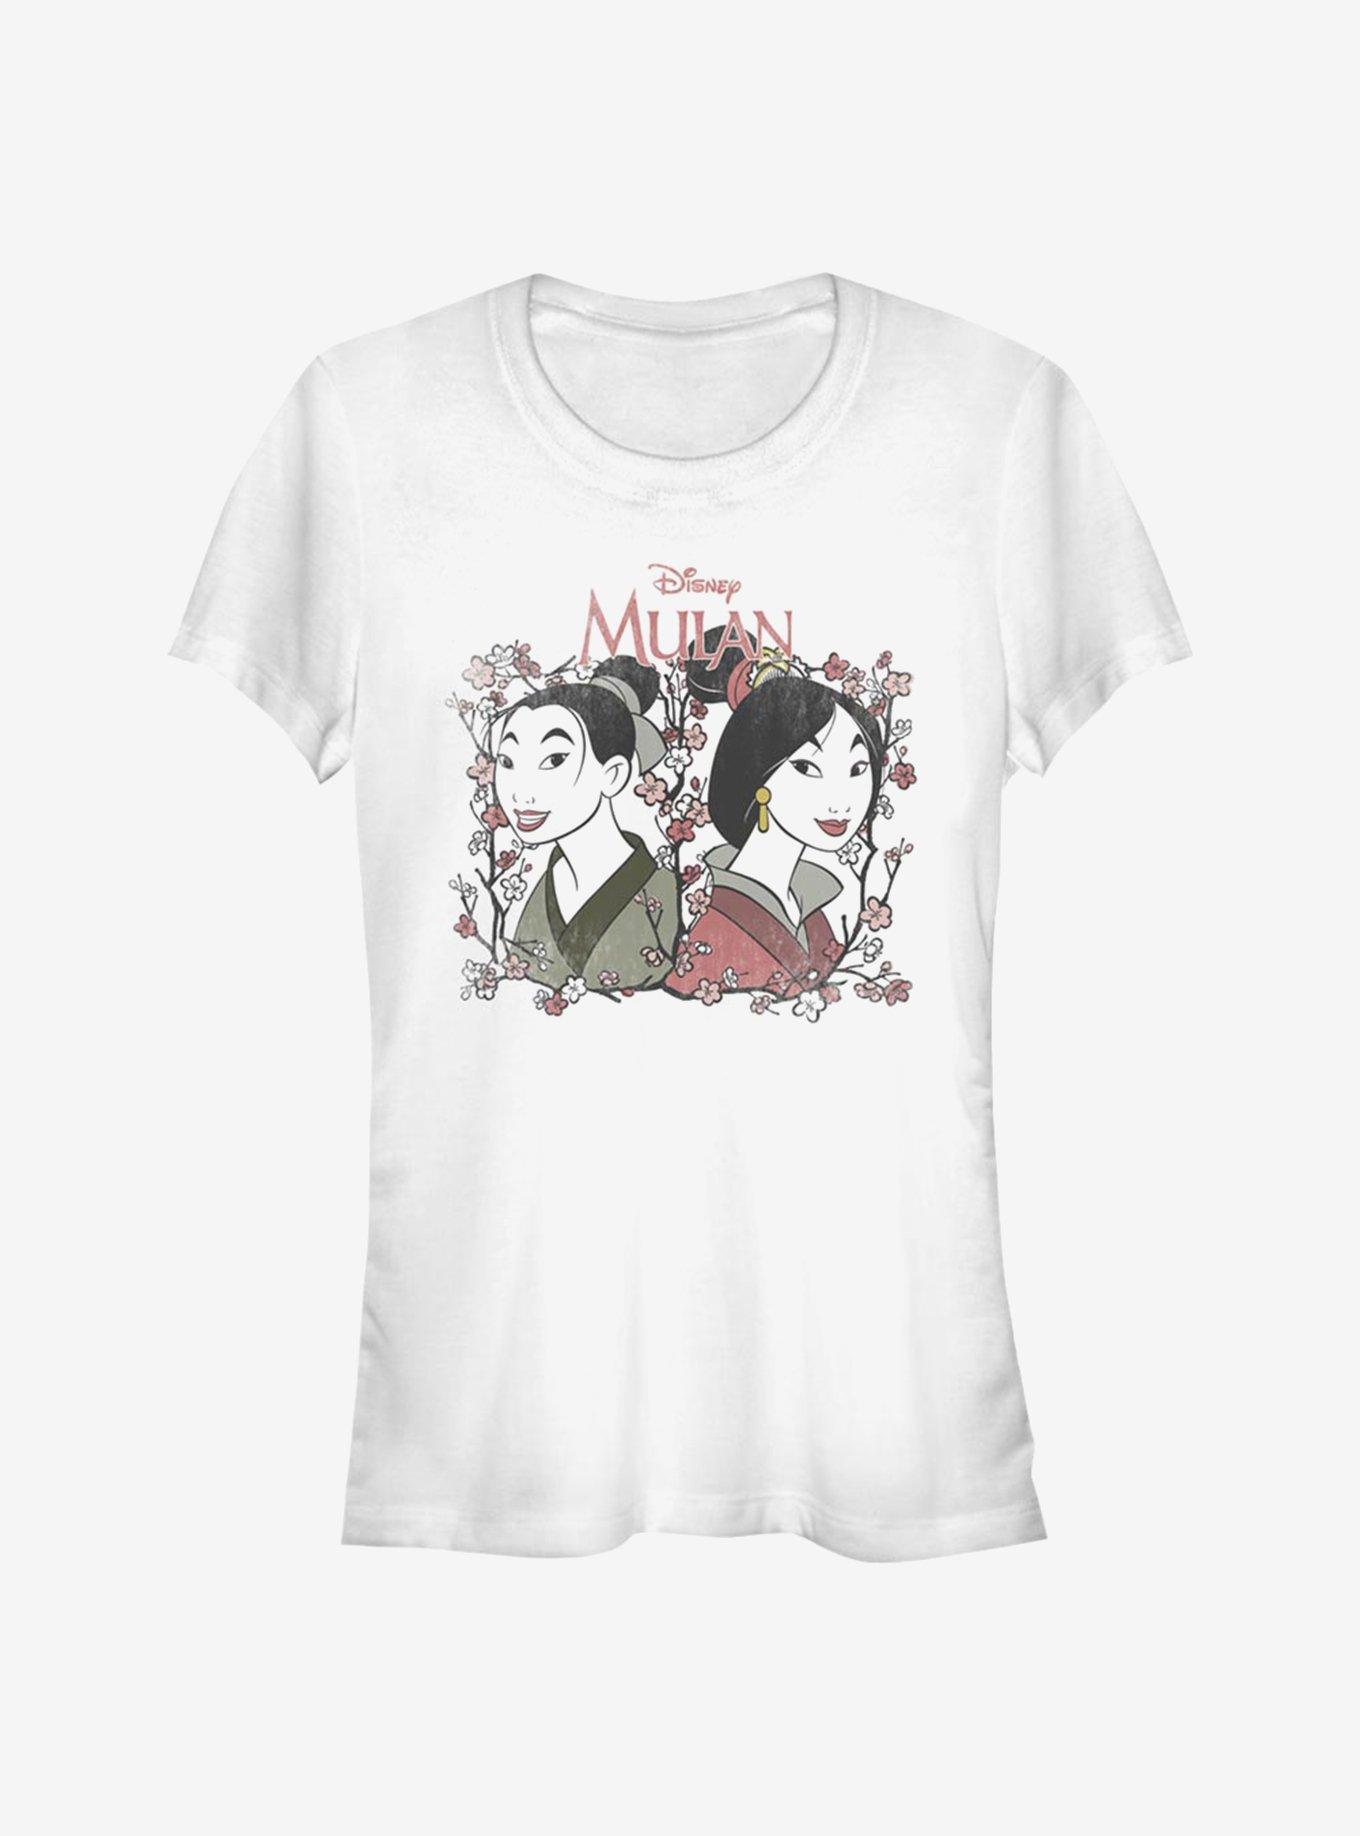 Disney Mulan Reflection Girls T-Shirt